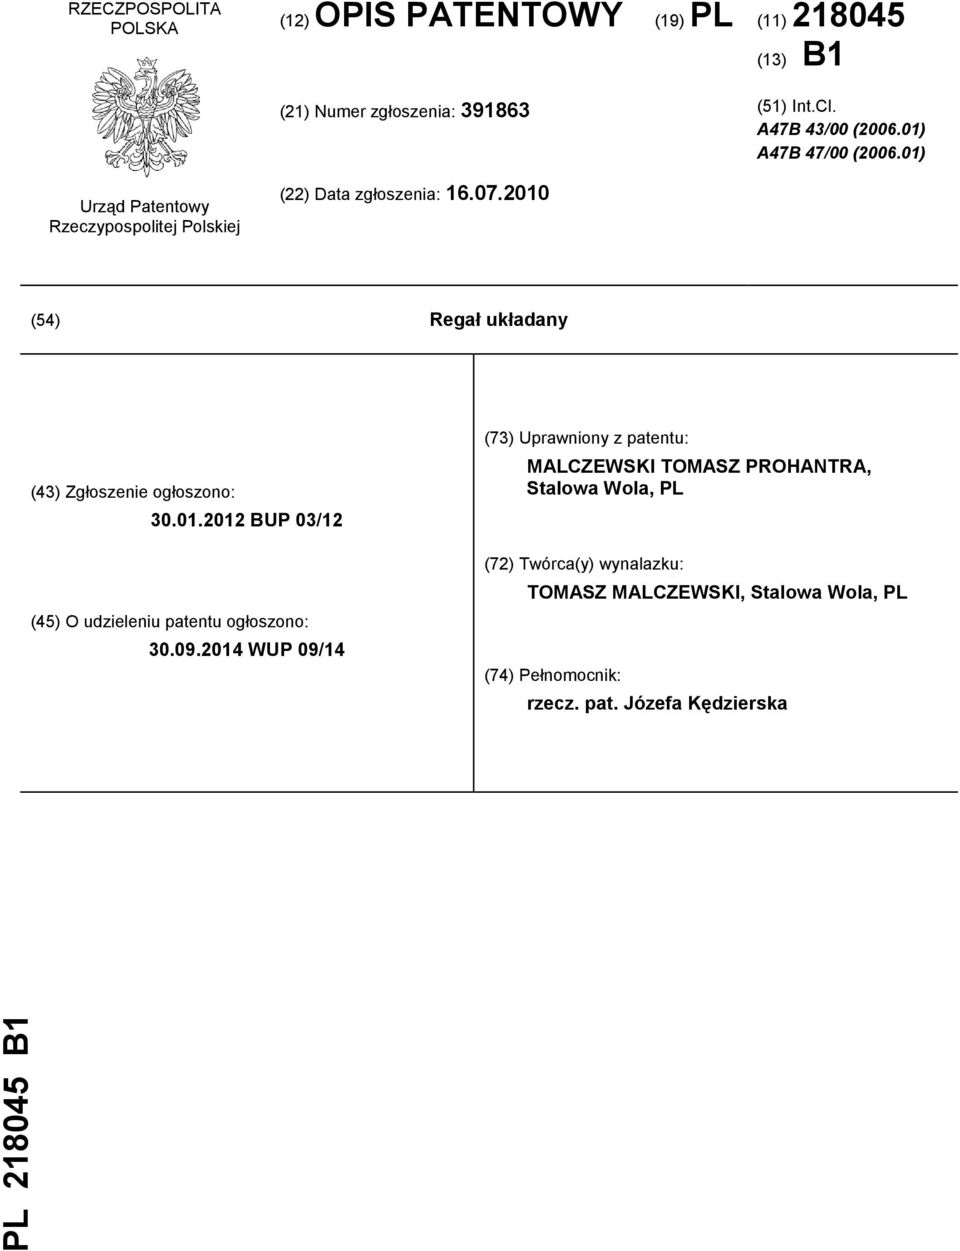 2010 (54) Regał układany (43) Zgłoszenie ogłoszono: 30.01.2012 BUP 03/12 (45) O udzieleniu patentu ogłoszono: 30.09.